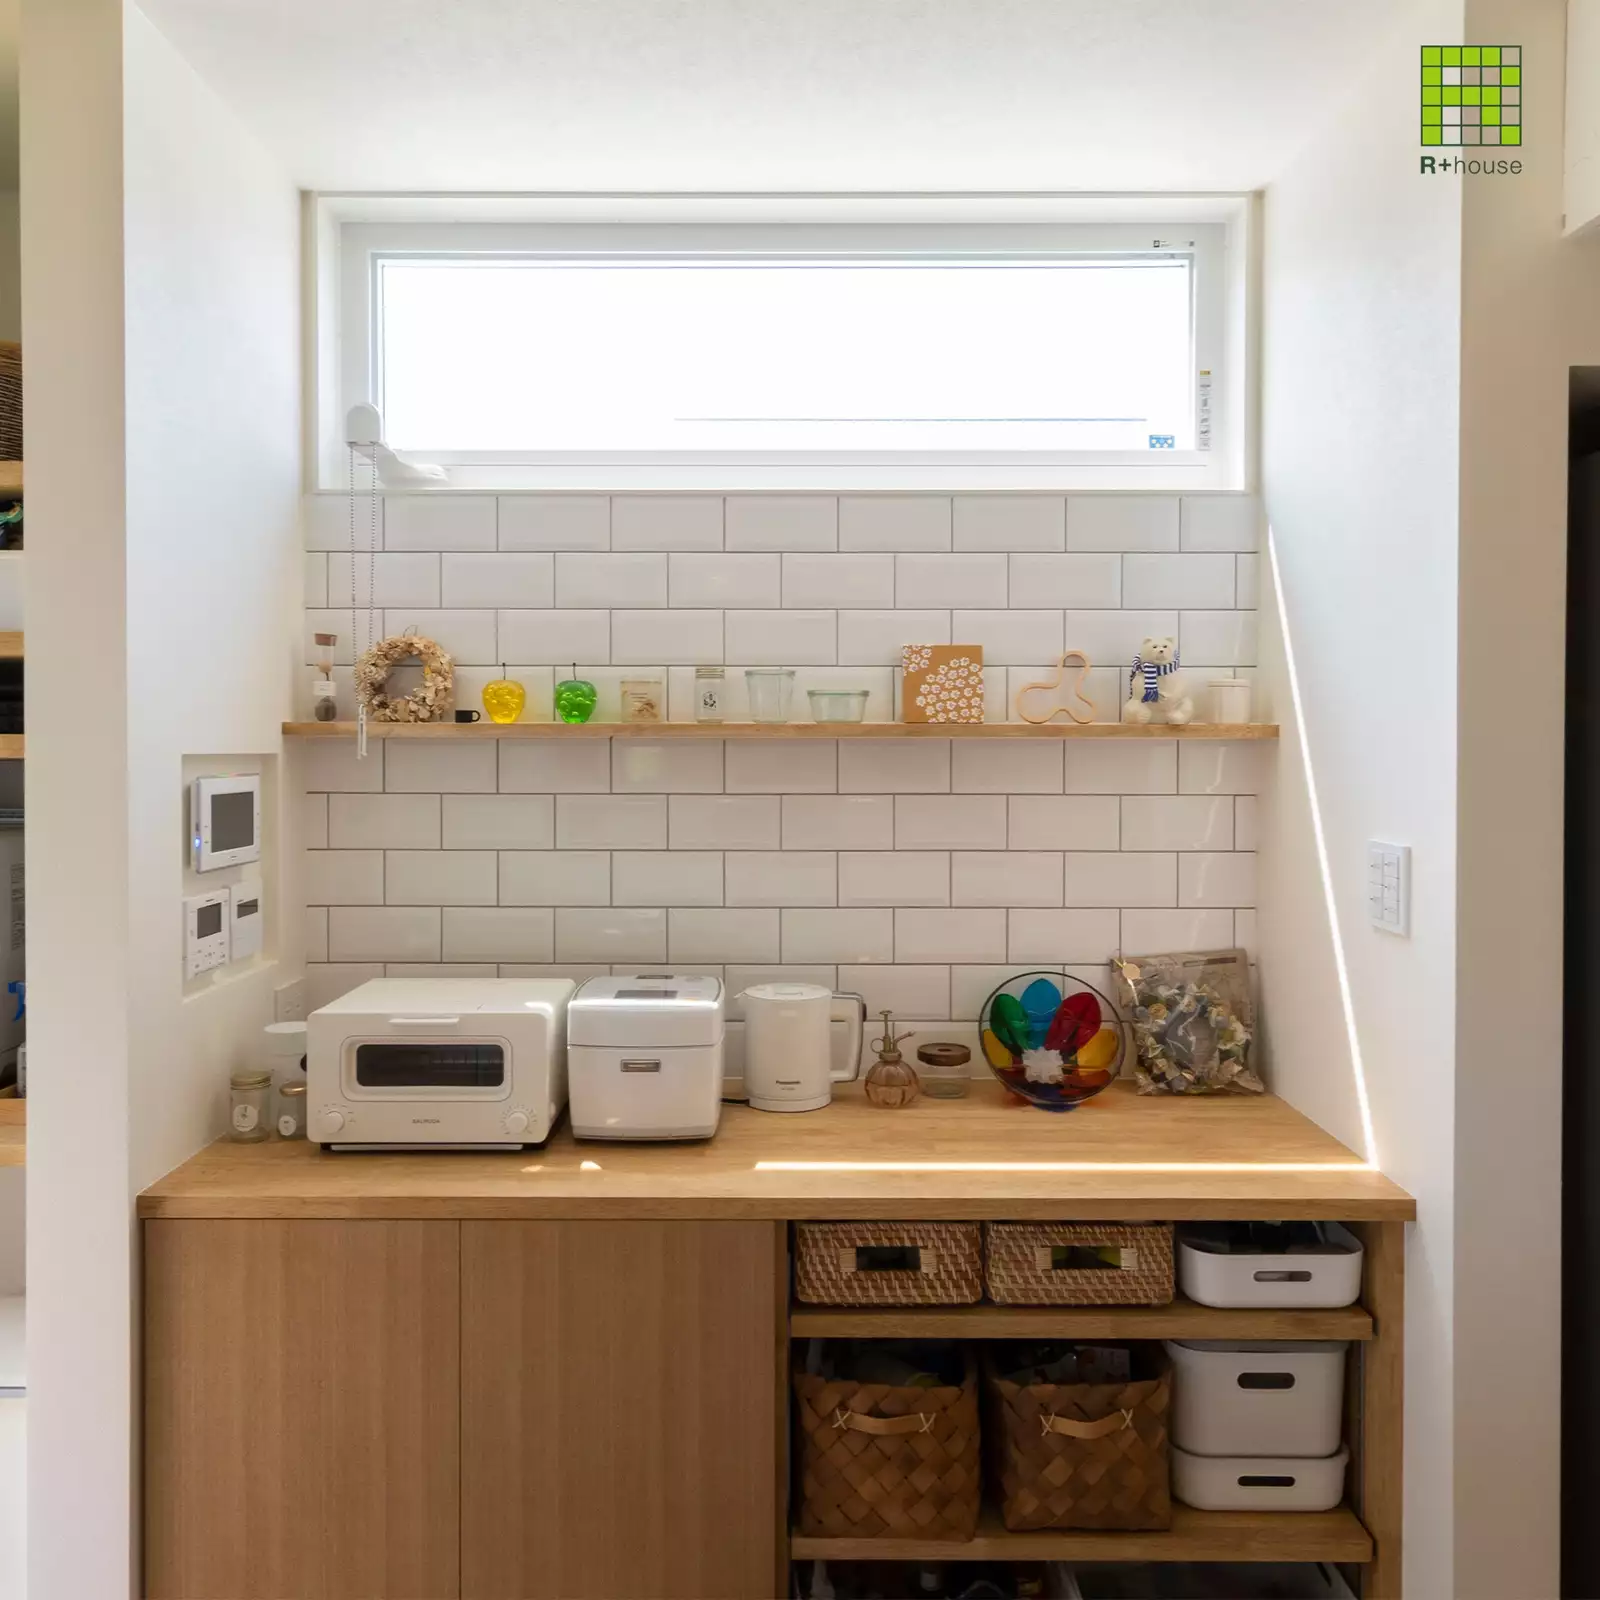 R+houseの物件のキッチンの棚の写真です。上部に横長の窓。壁は白タイルにしてお気に入りの小物を並べられるオープンな棚を。